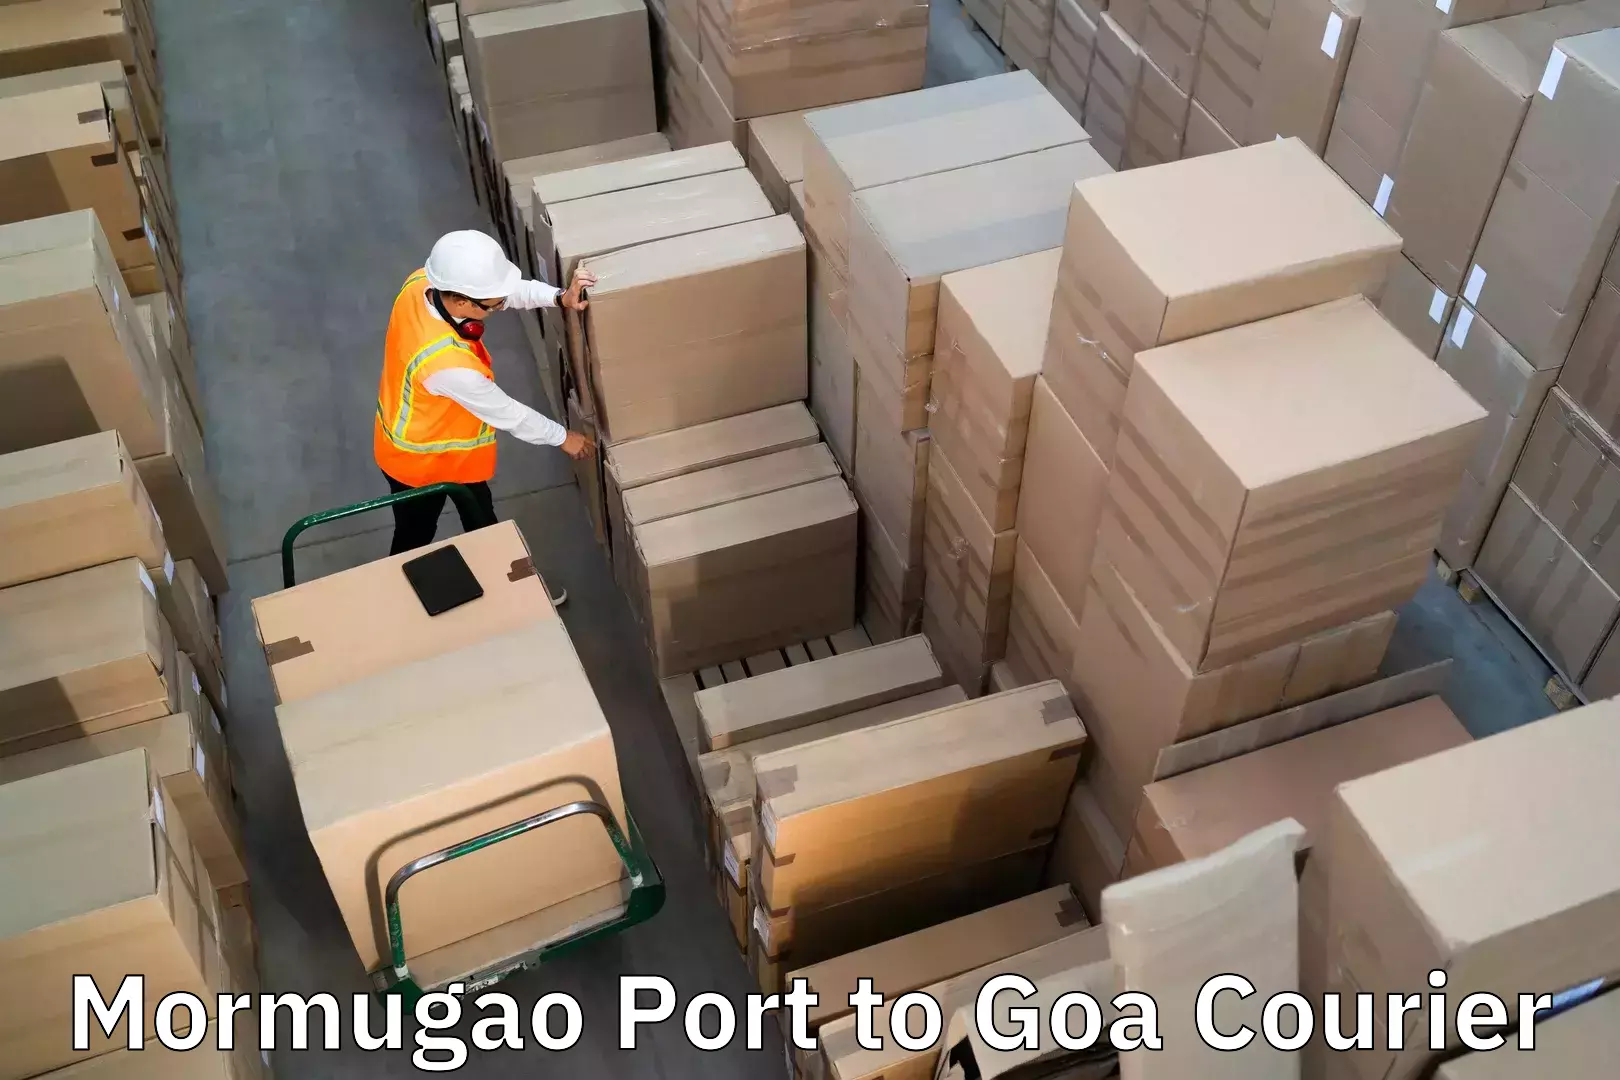 Reliable luggage courier Mormugao Port to Bicholim